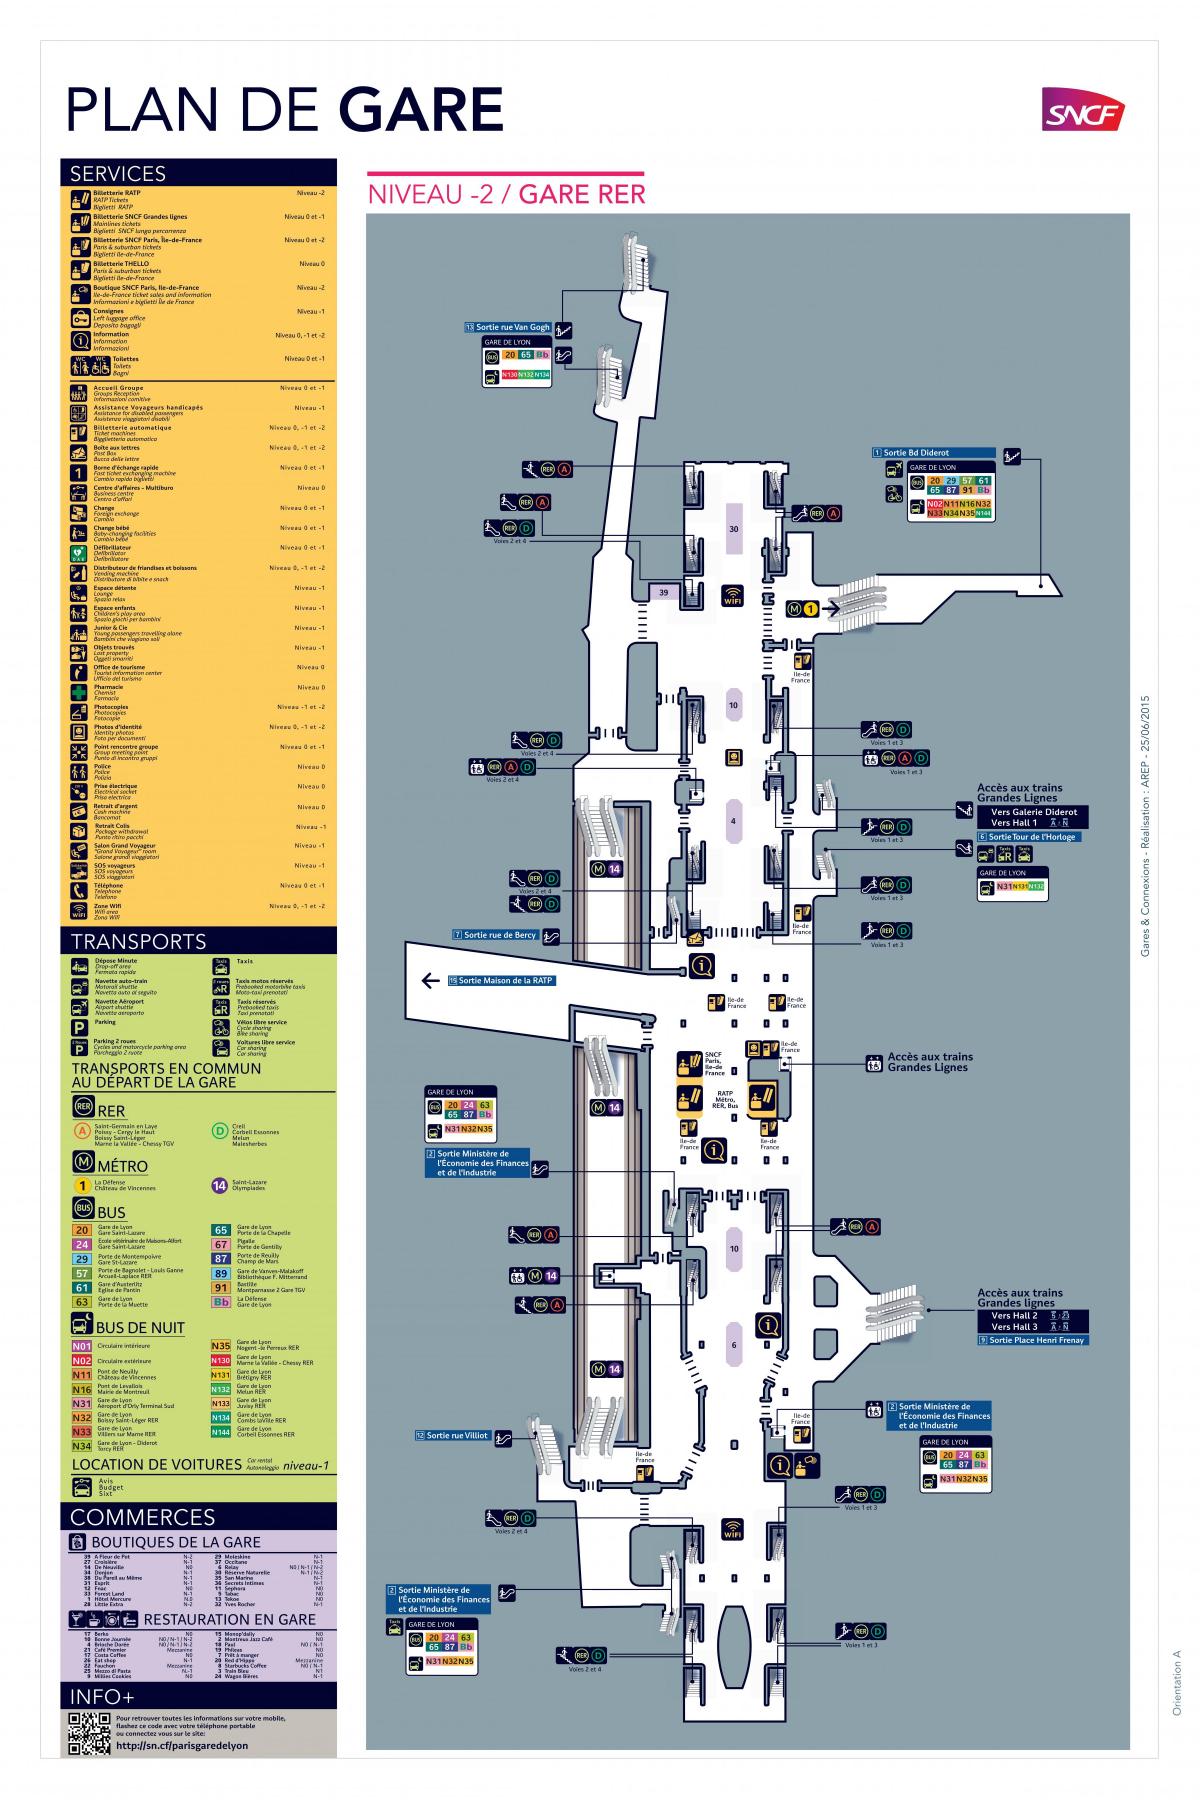 Карта Парижа-Лионского вокзала rer